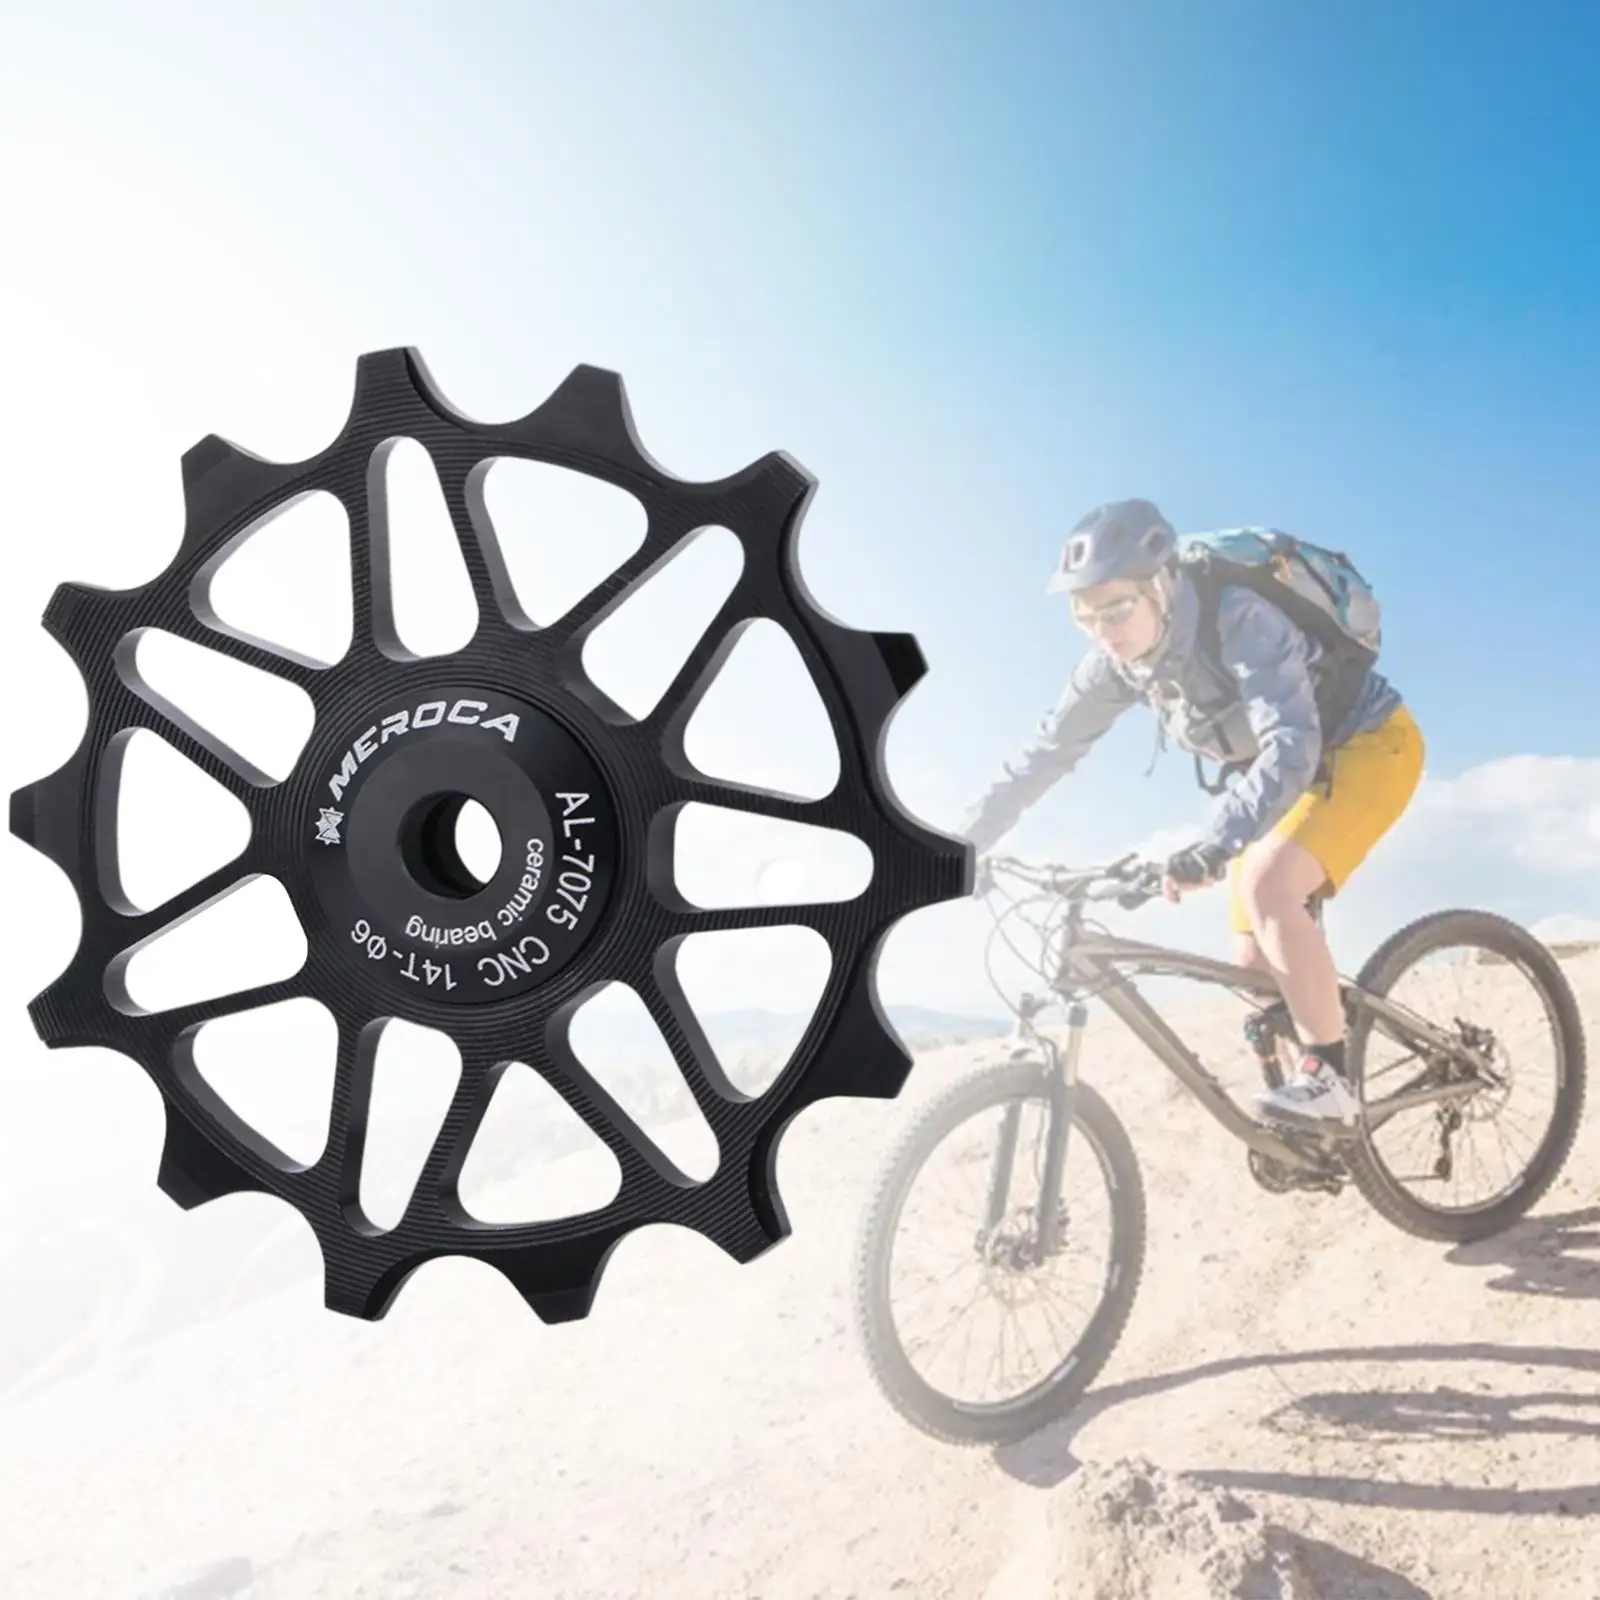  Wheel, Aluminum Alloy  Rear Derailleur Jockey Wheel Rear Derailleur Pulley Bike Accessories